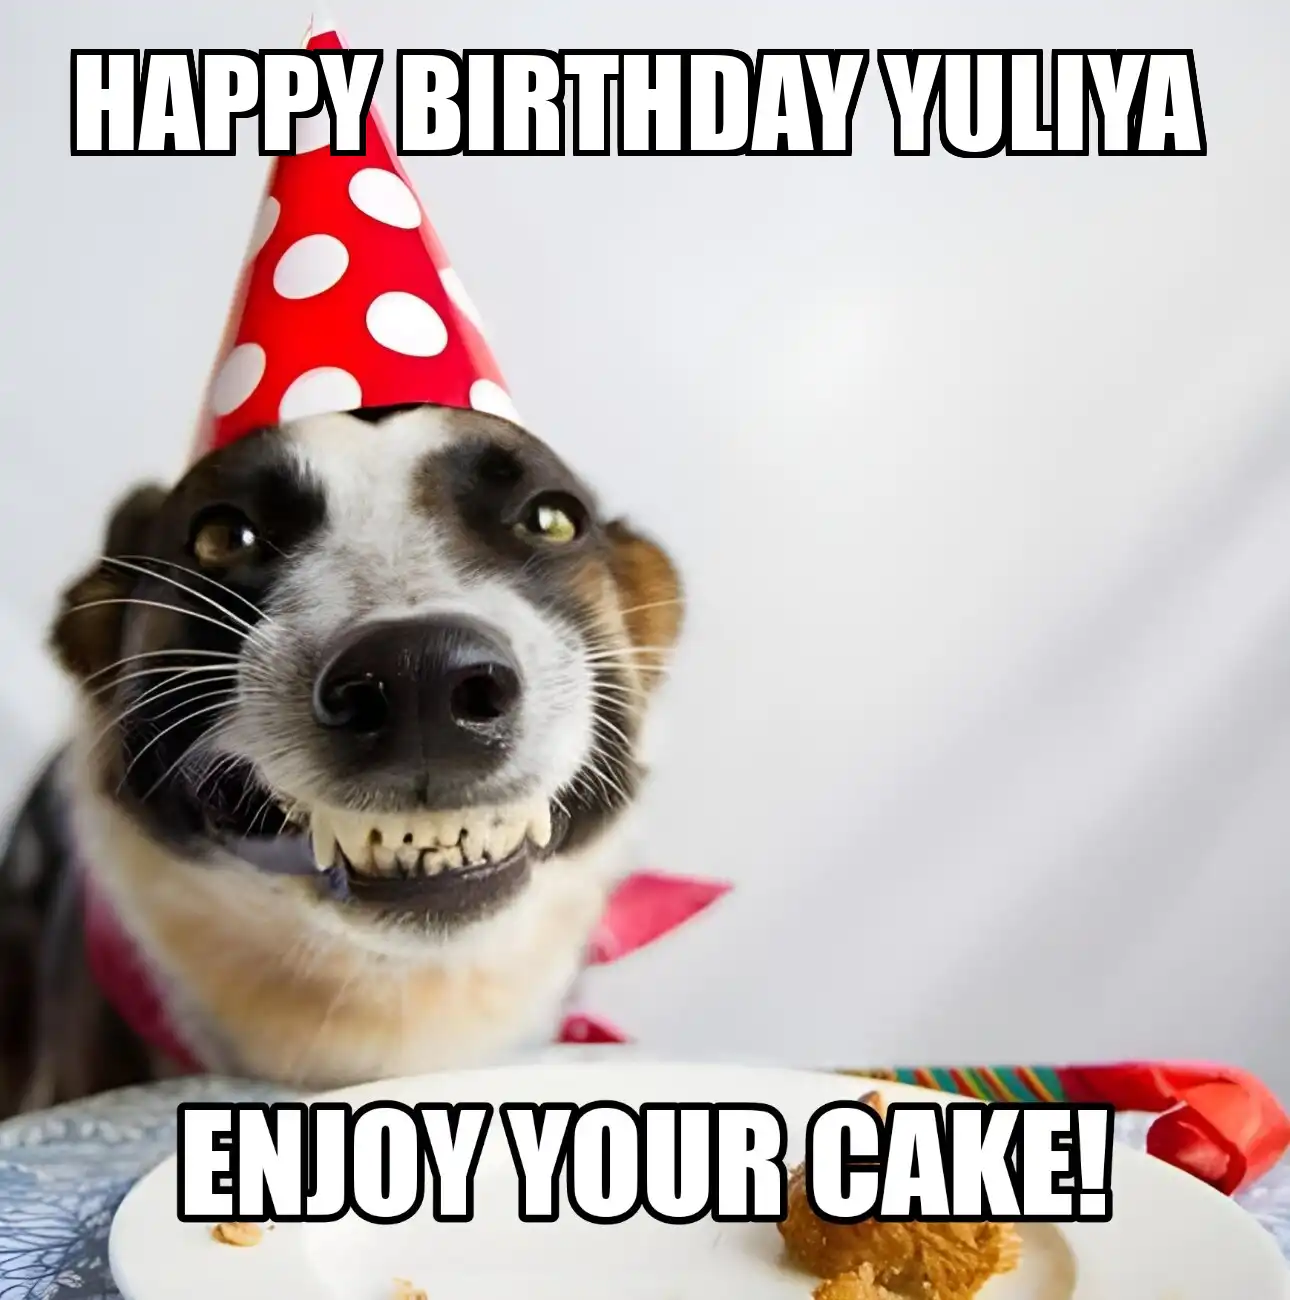 Happy Birthday Yuliya Enjoy Your Cake Dog Meme